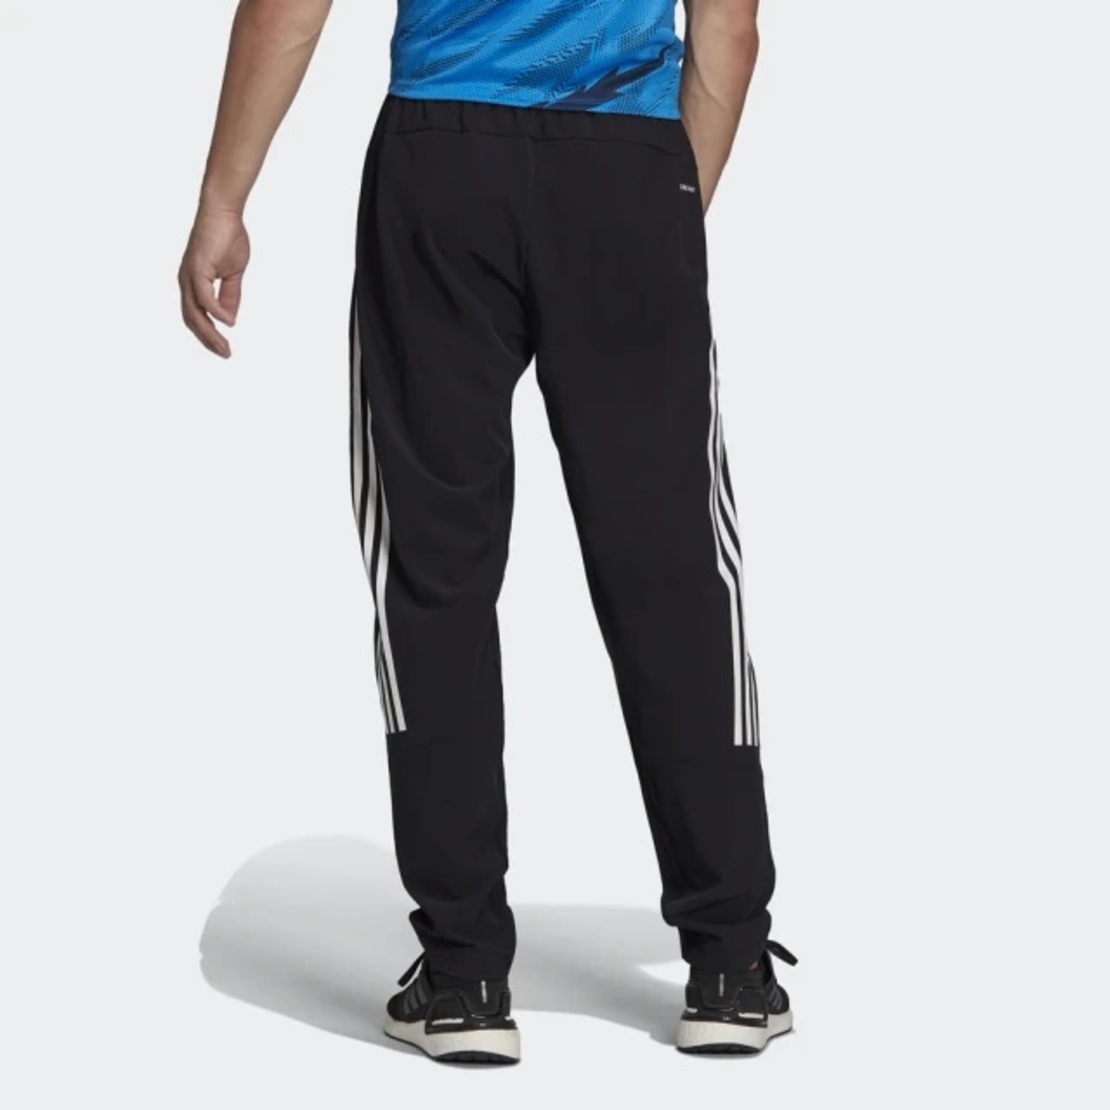 מכנס אדידס ניילון לגבר | Adidas Tiro Woven Pant